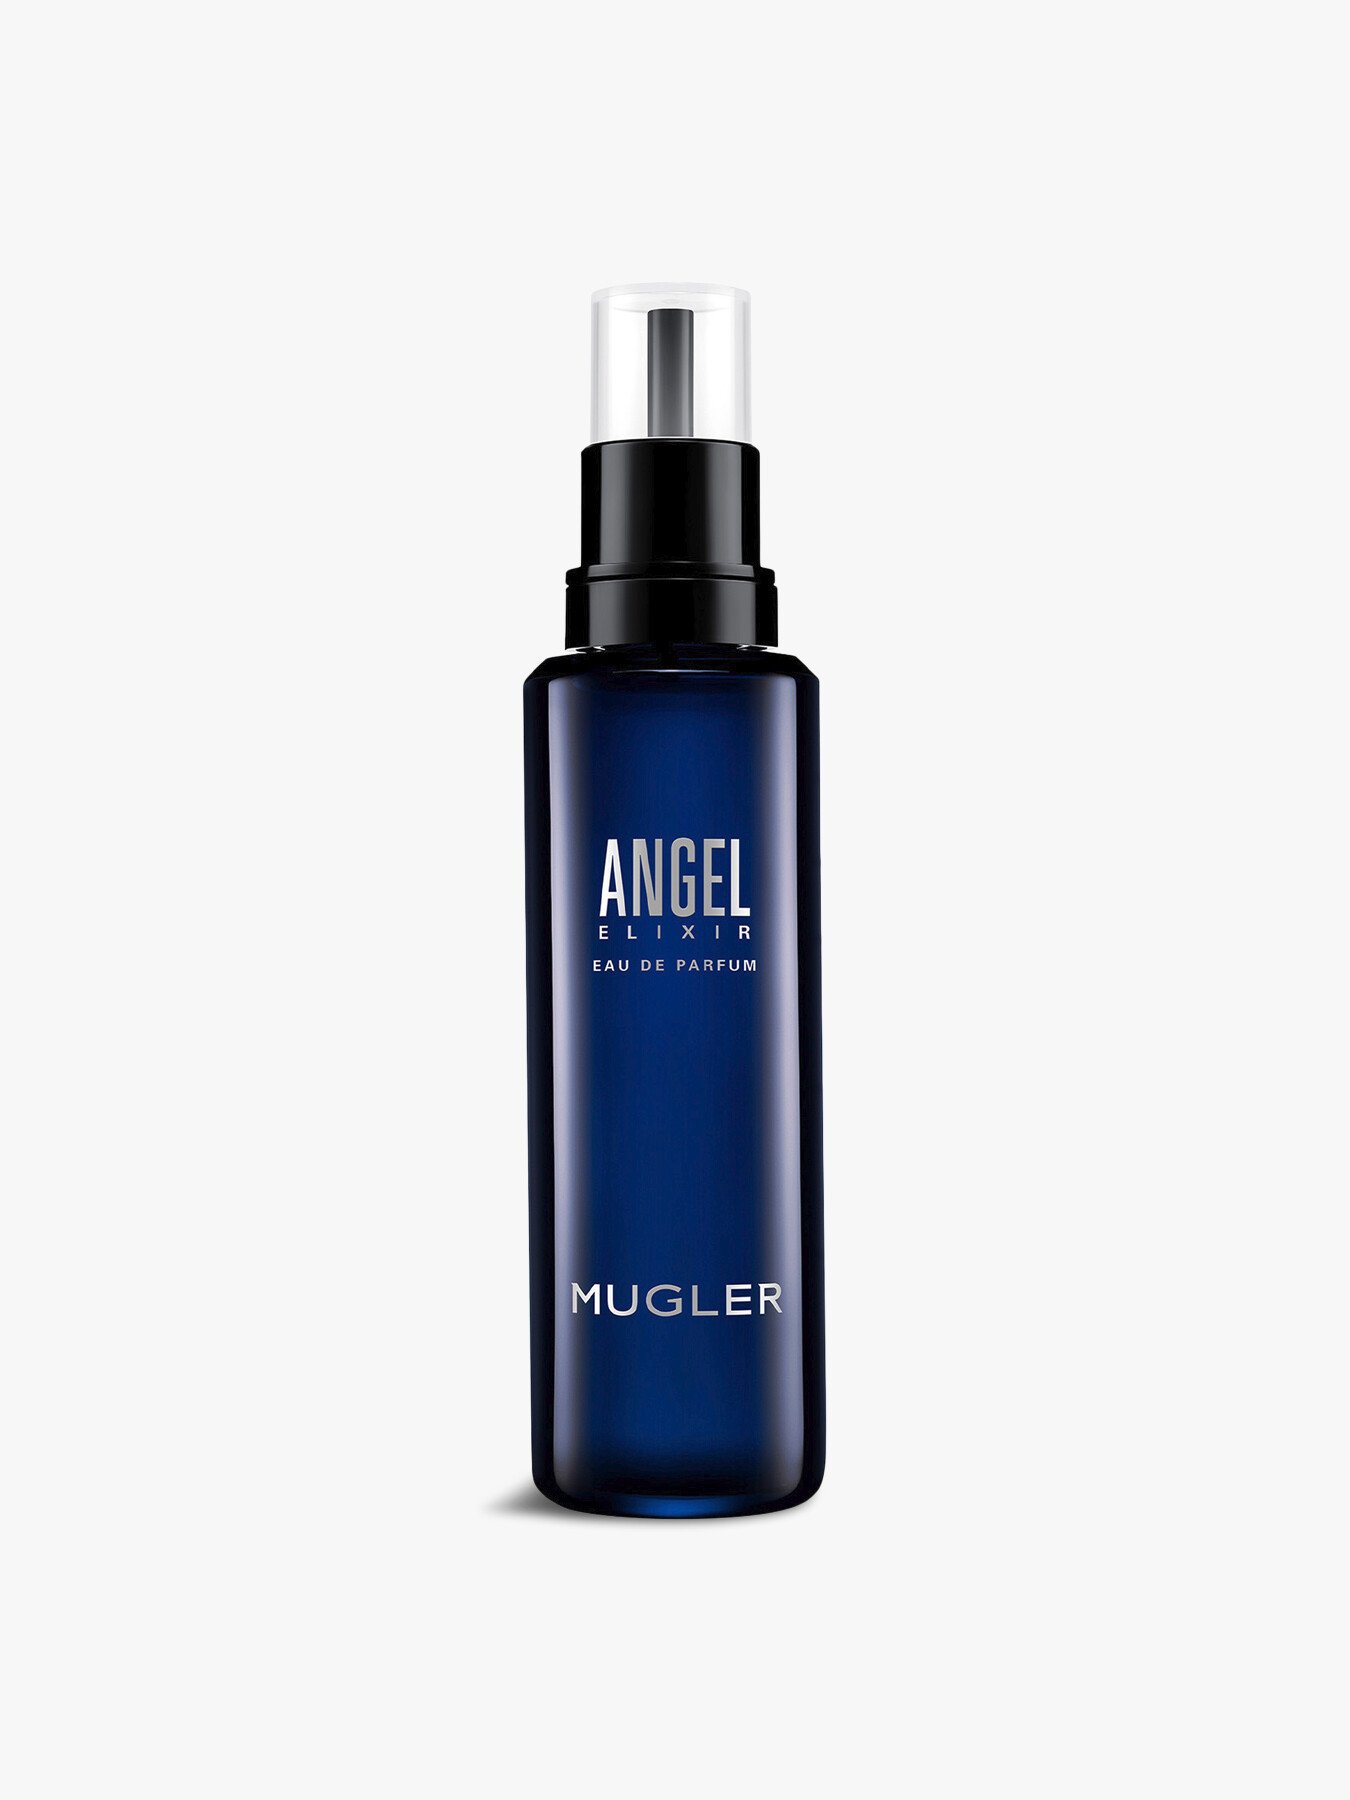 Mugler Angel Elixir Edp 100ml Refill